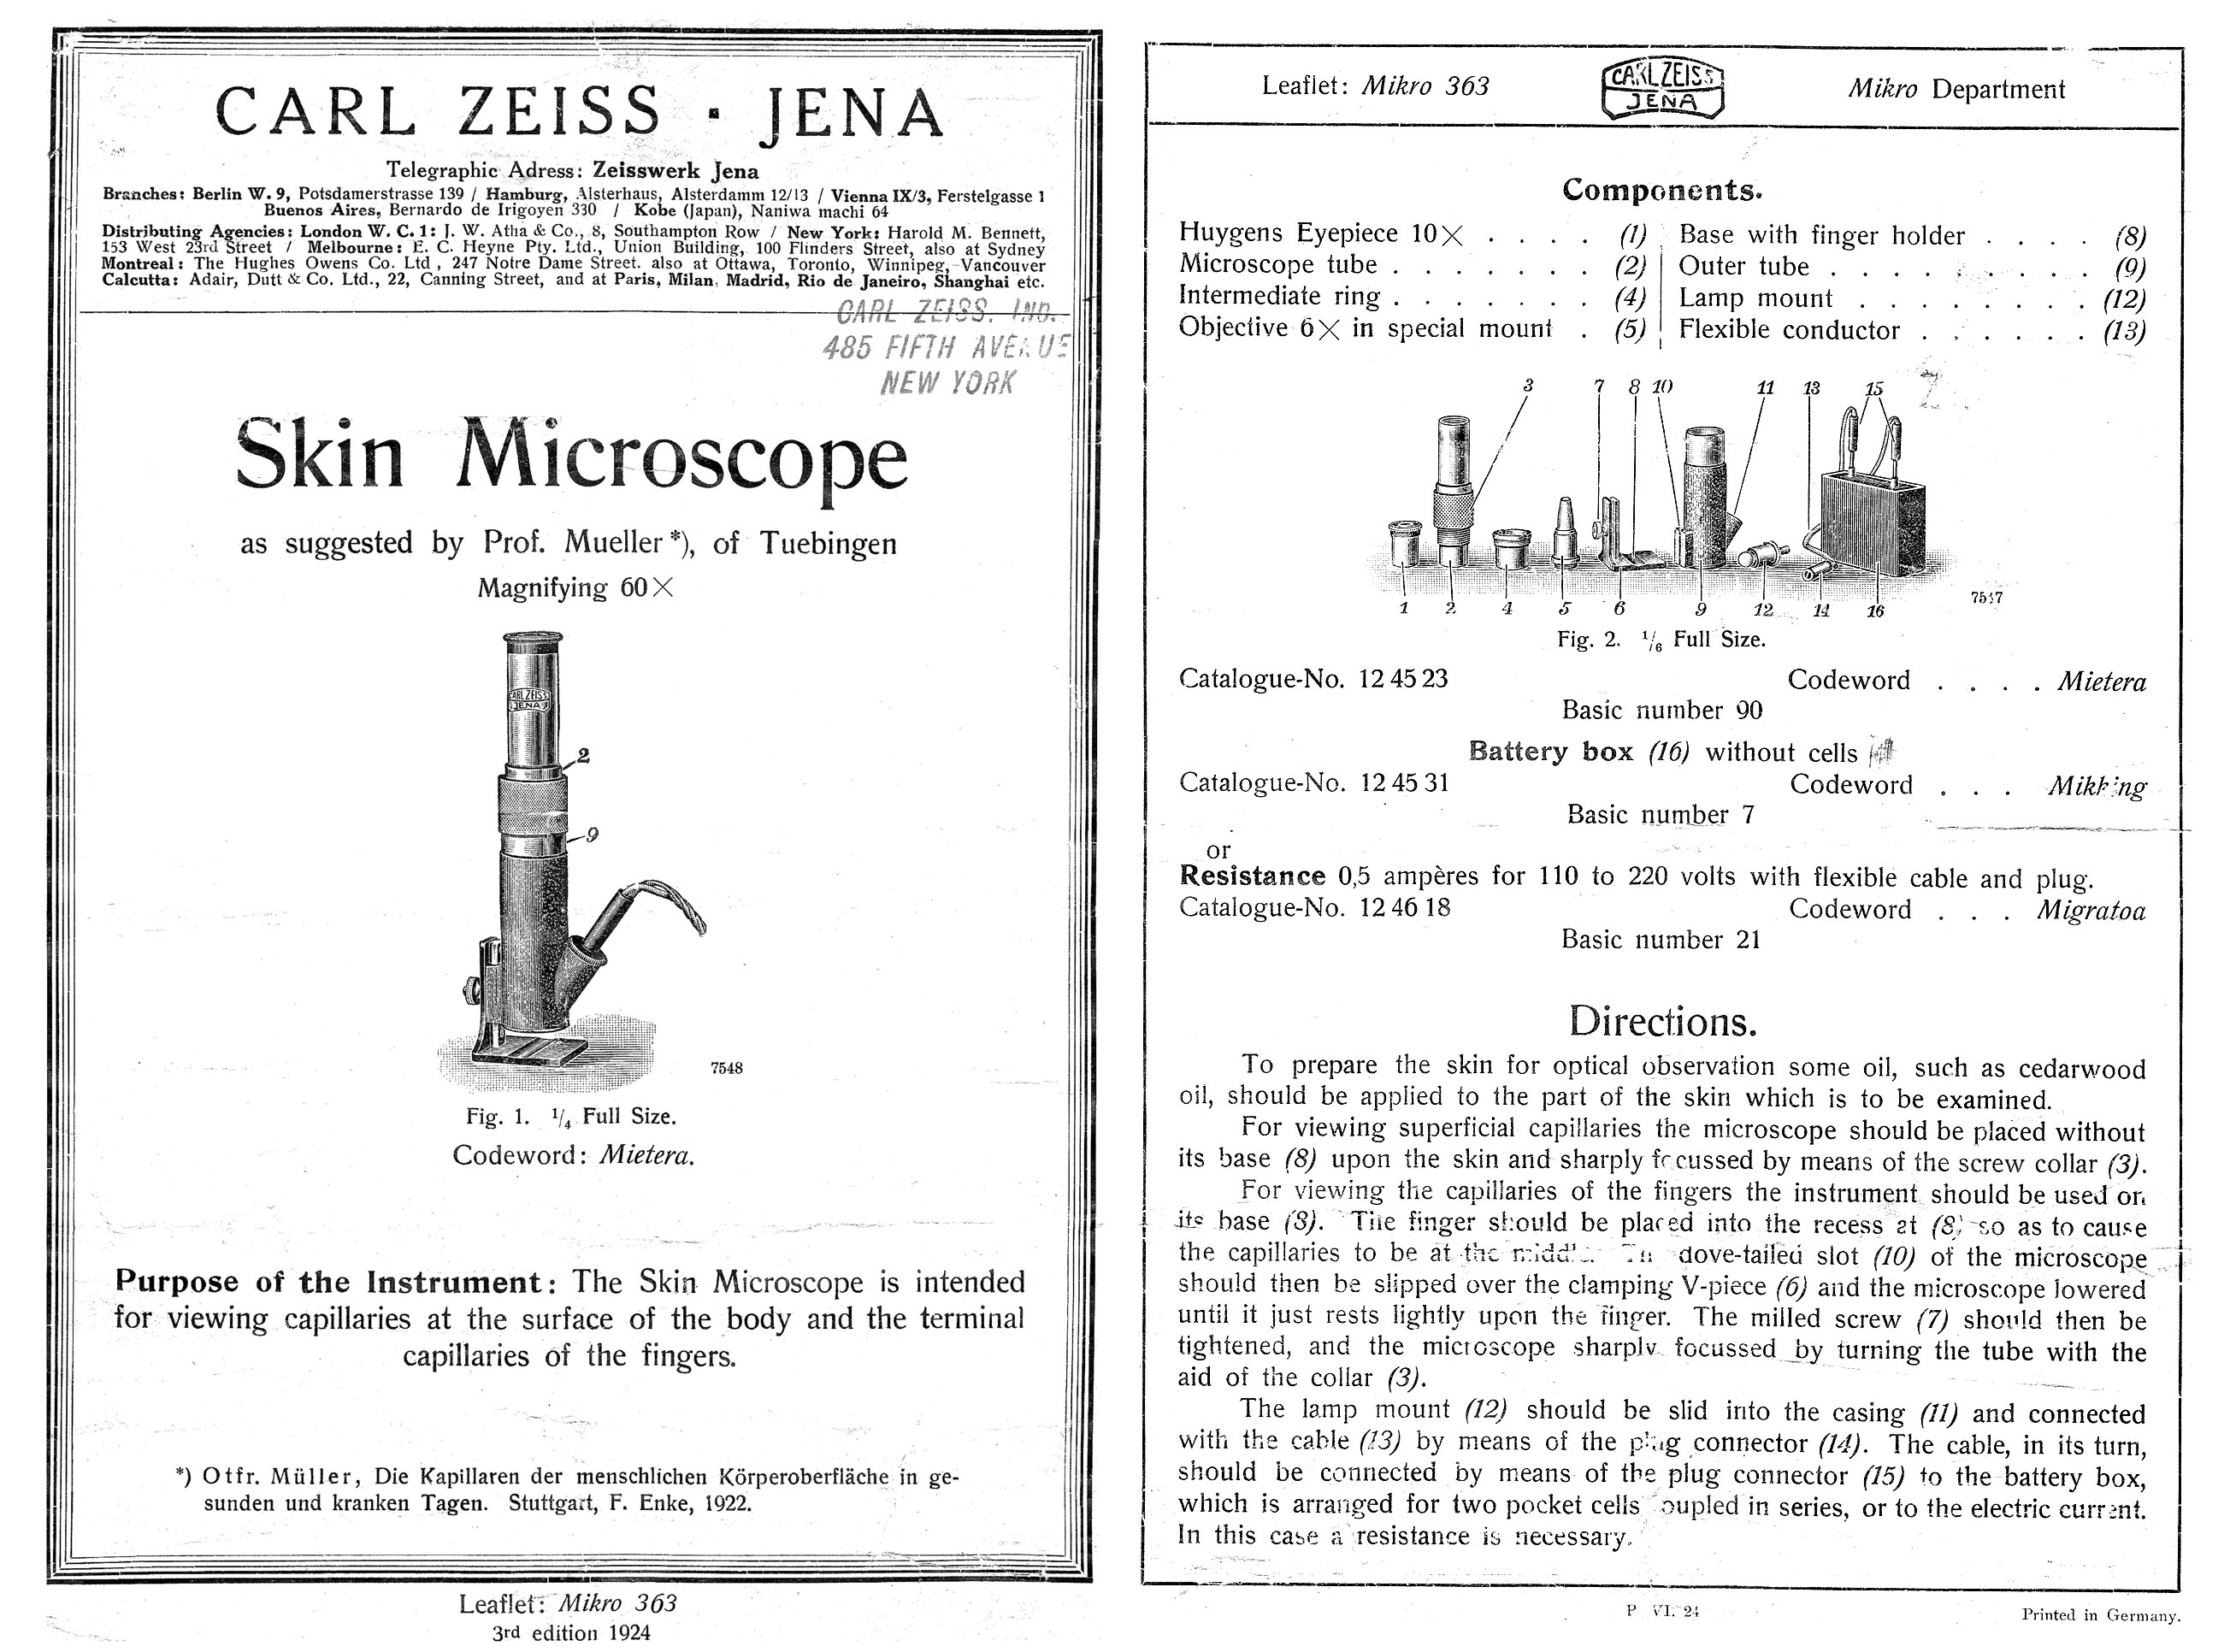 1924 Zeiss Leaflet for Muller Skin Microscope